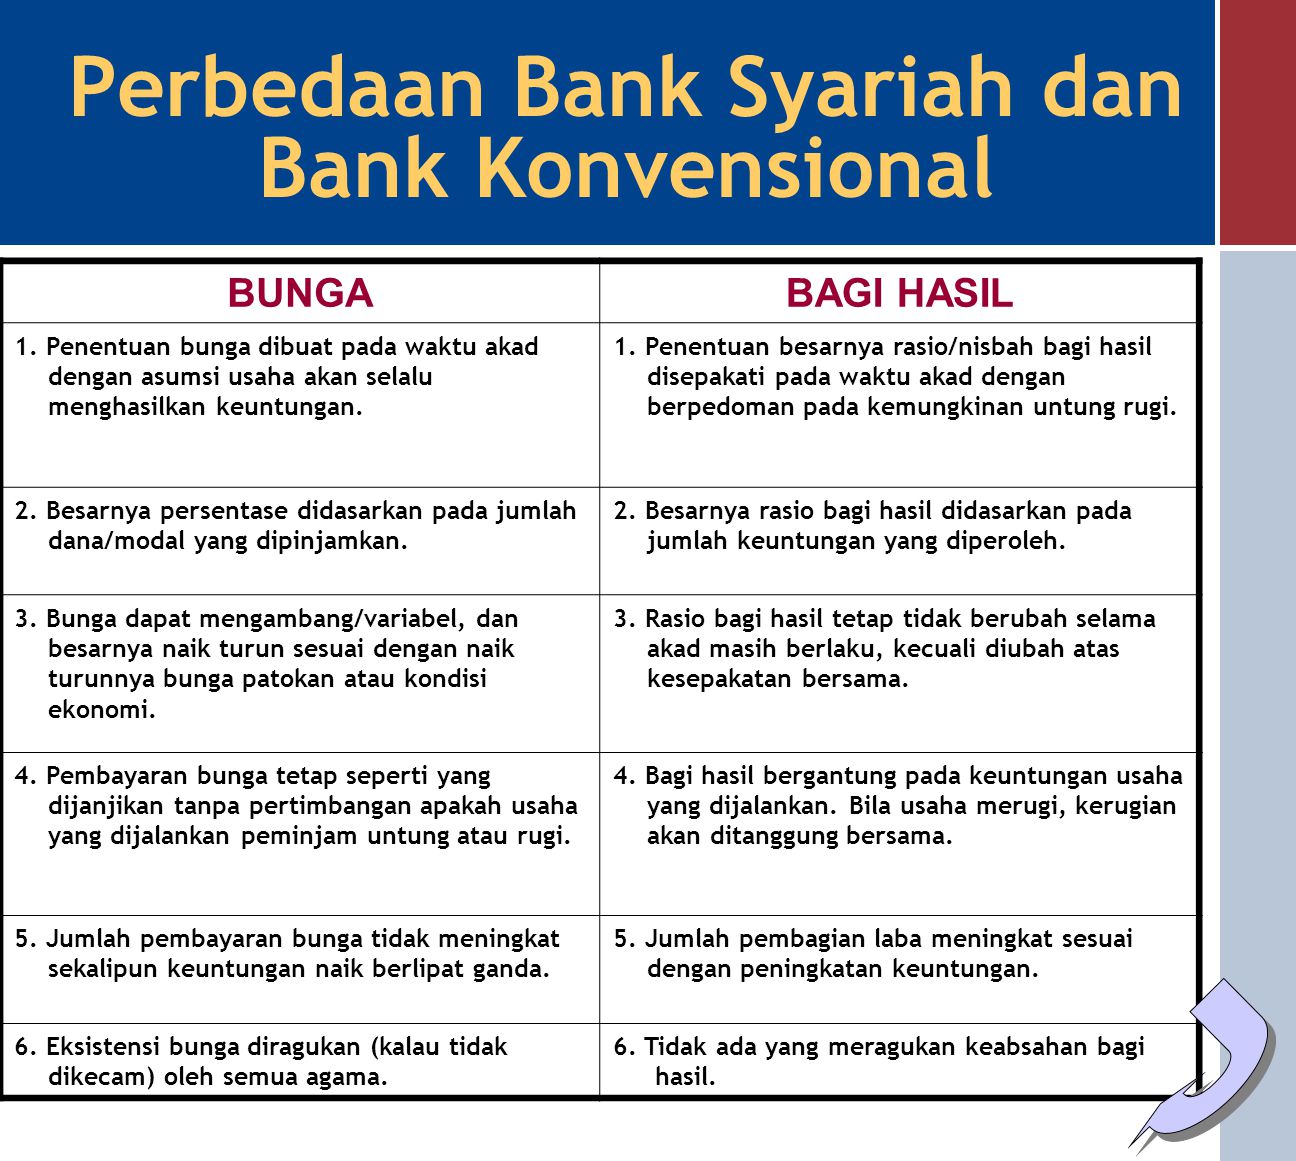 Perbedaan Bank Syariah dan Bank Konvensional